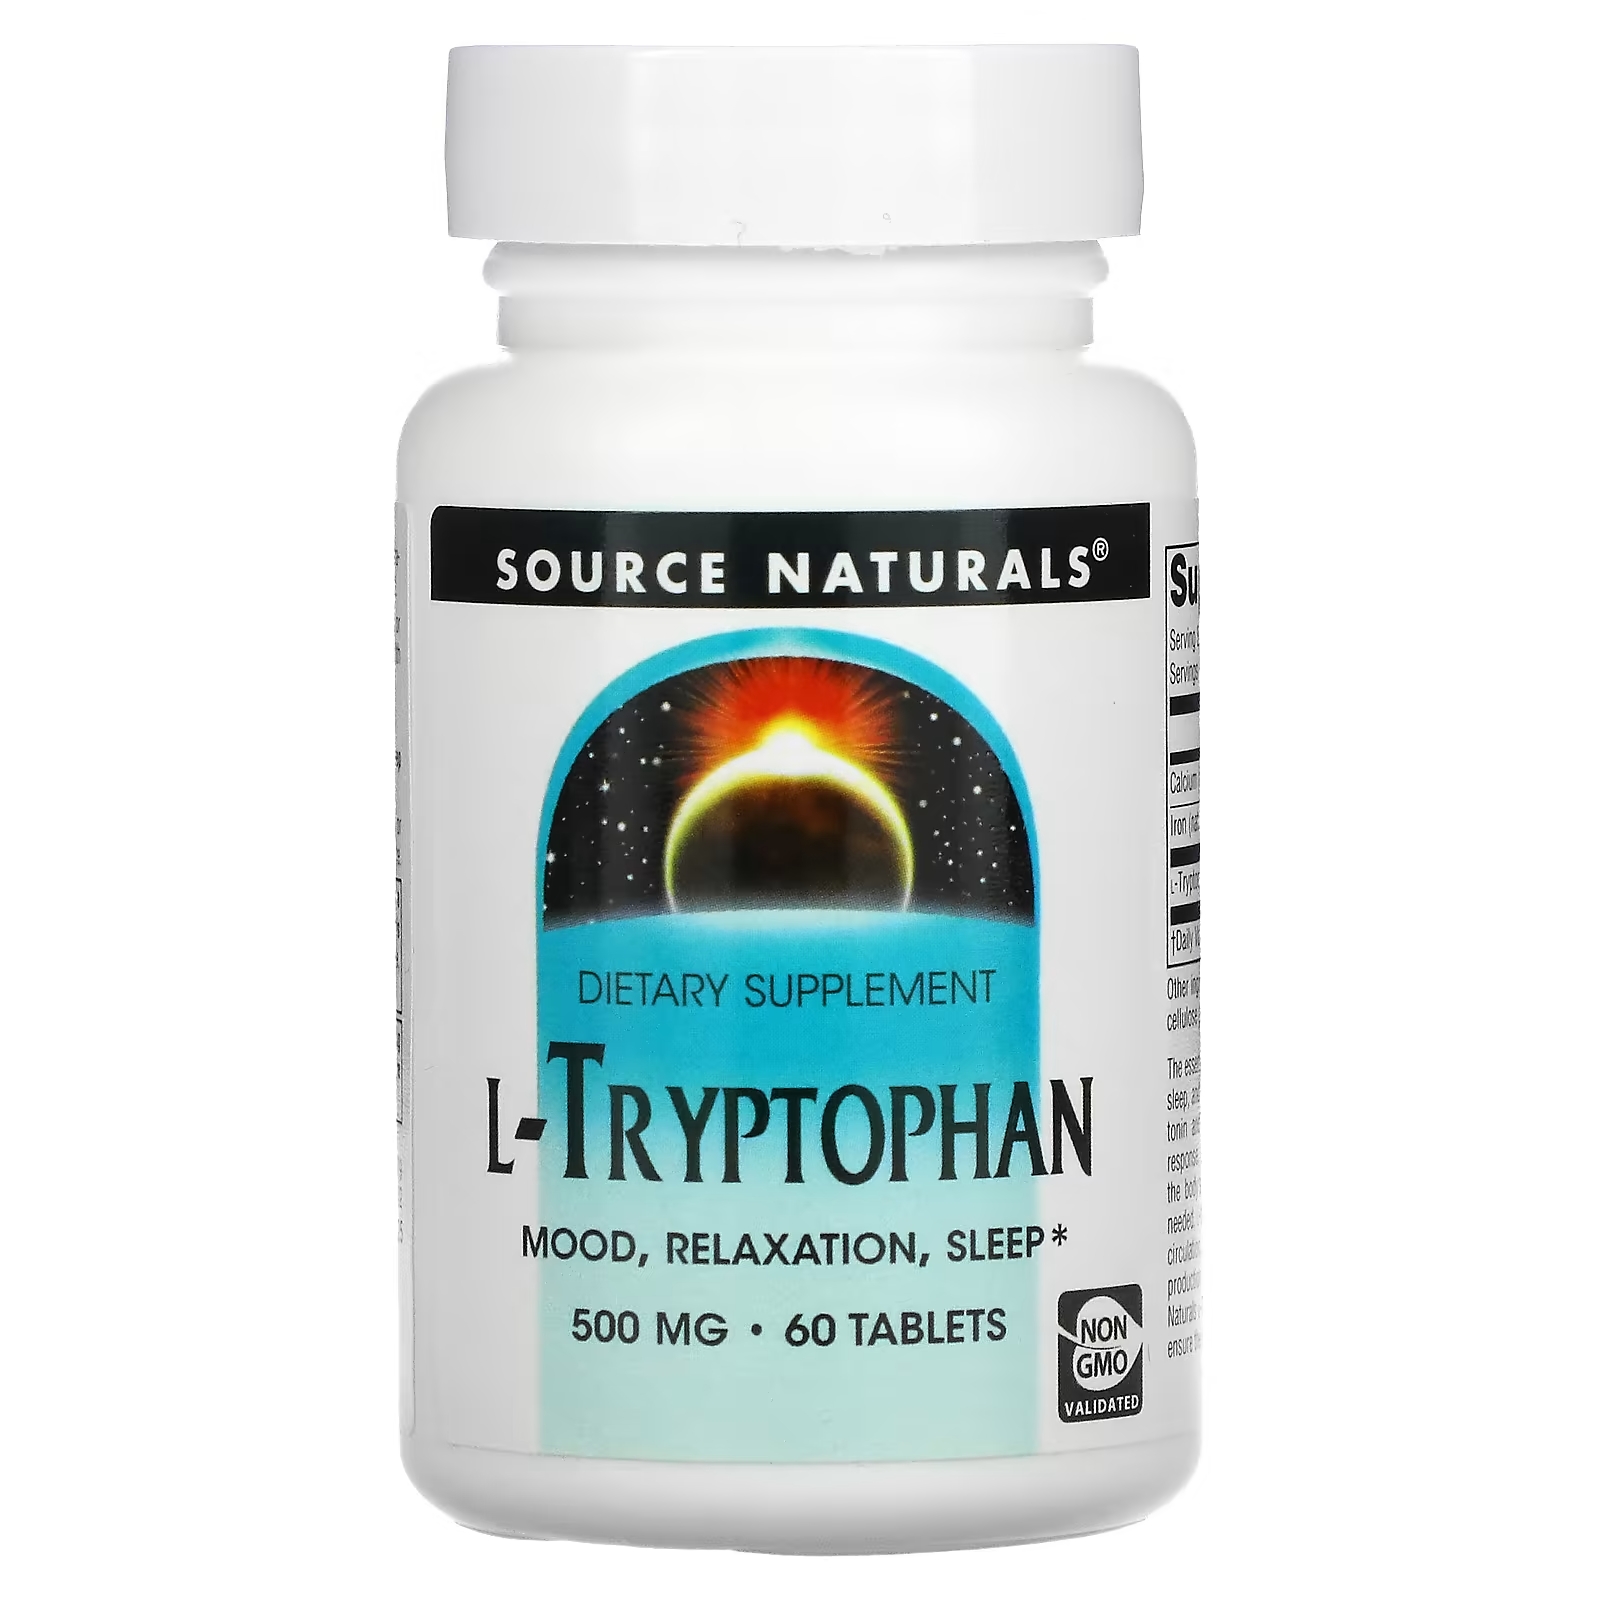 Source Naturals L-триптофан 500 мг, 60 таблеток source naturals бромелаин 2000 гду г 500 мг 60 таблеток